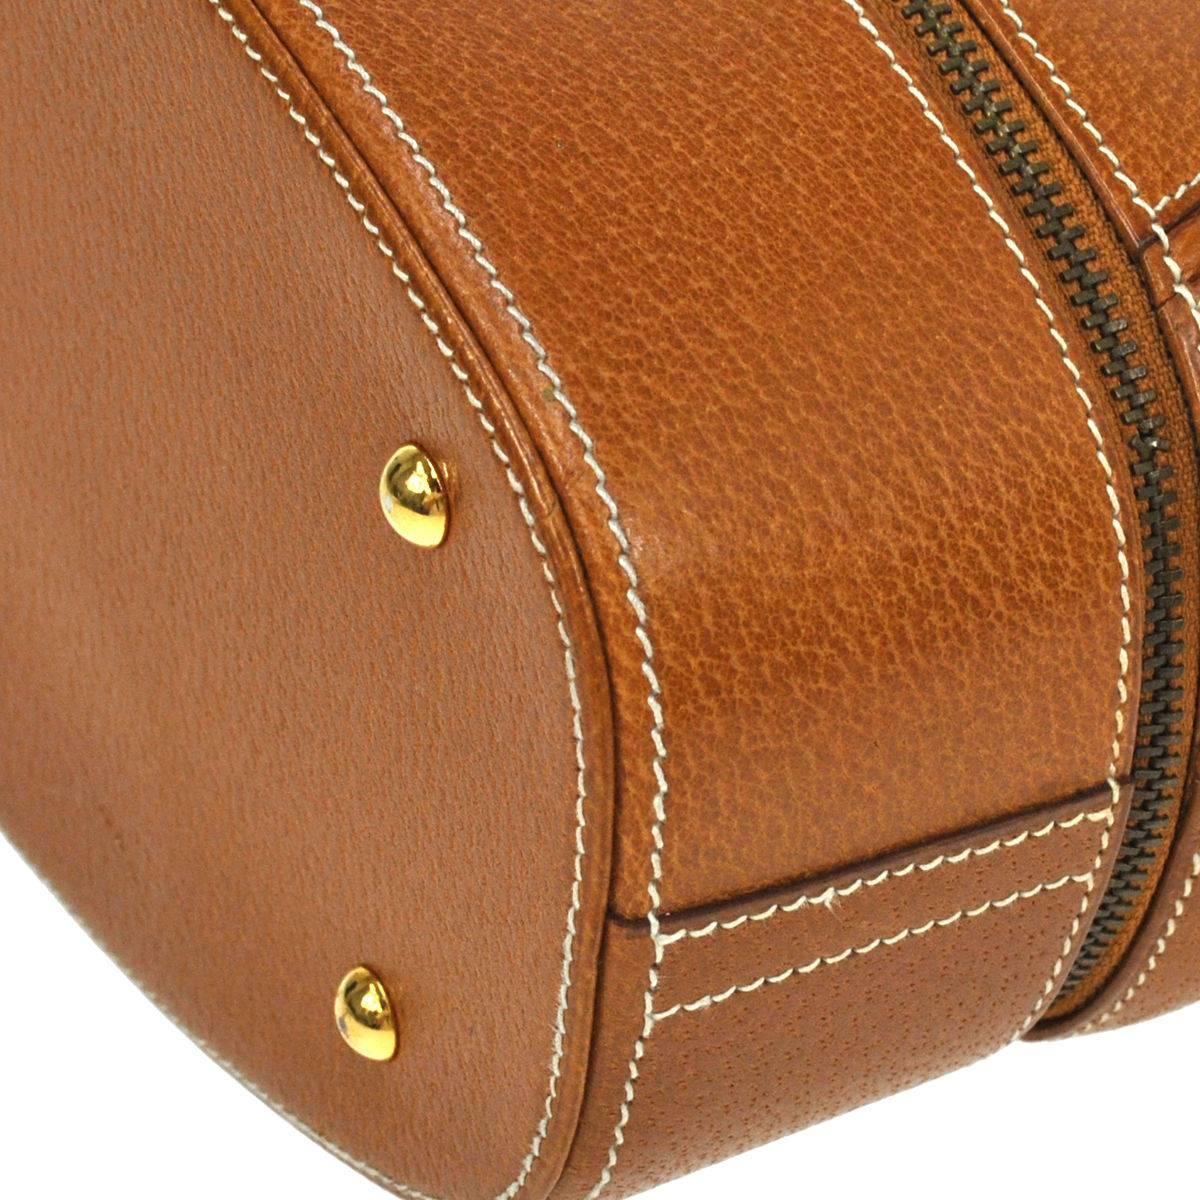 Women's Hermes Rare Vintage Cognac Leather Bottom Flap Top Handle Satchel Bag